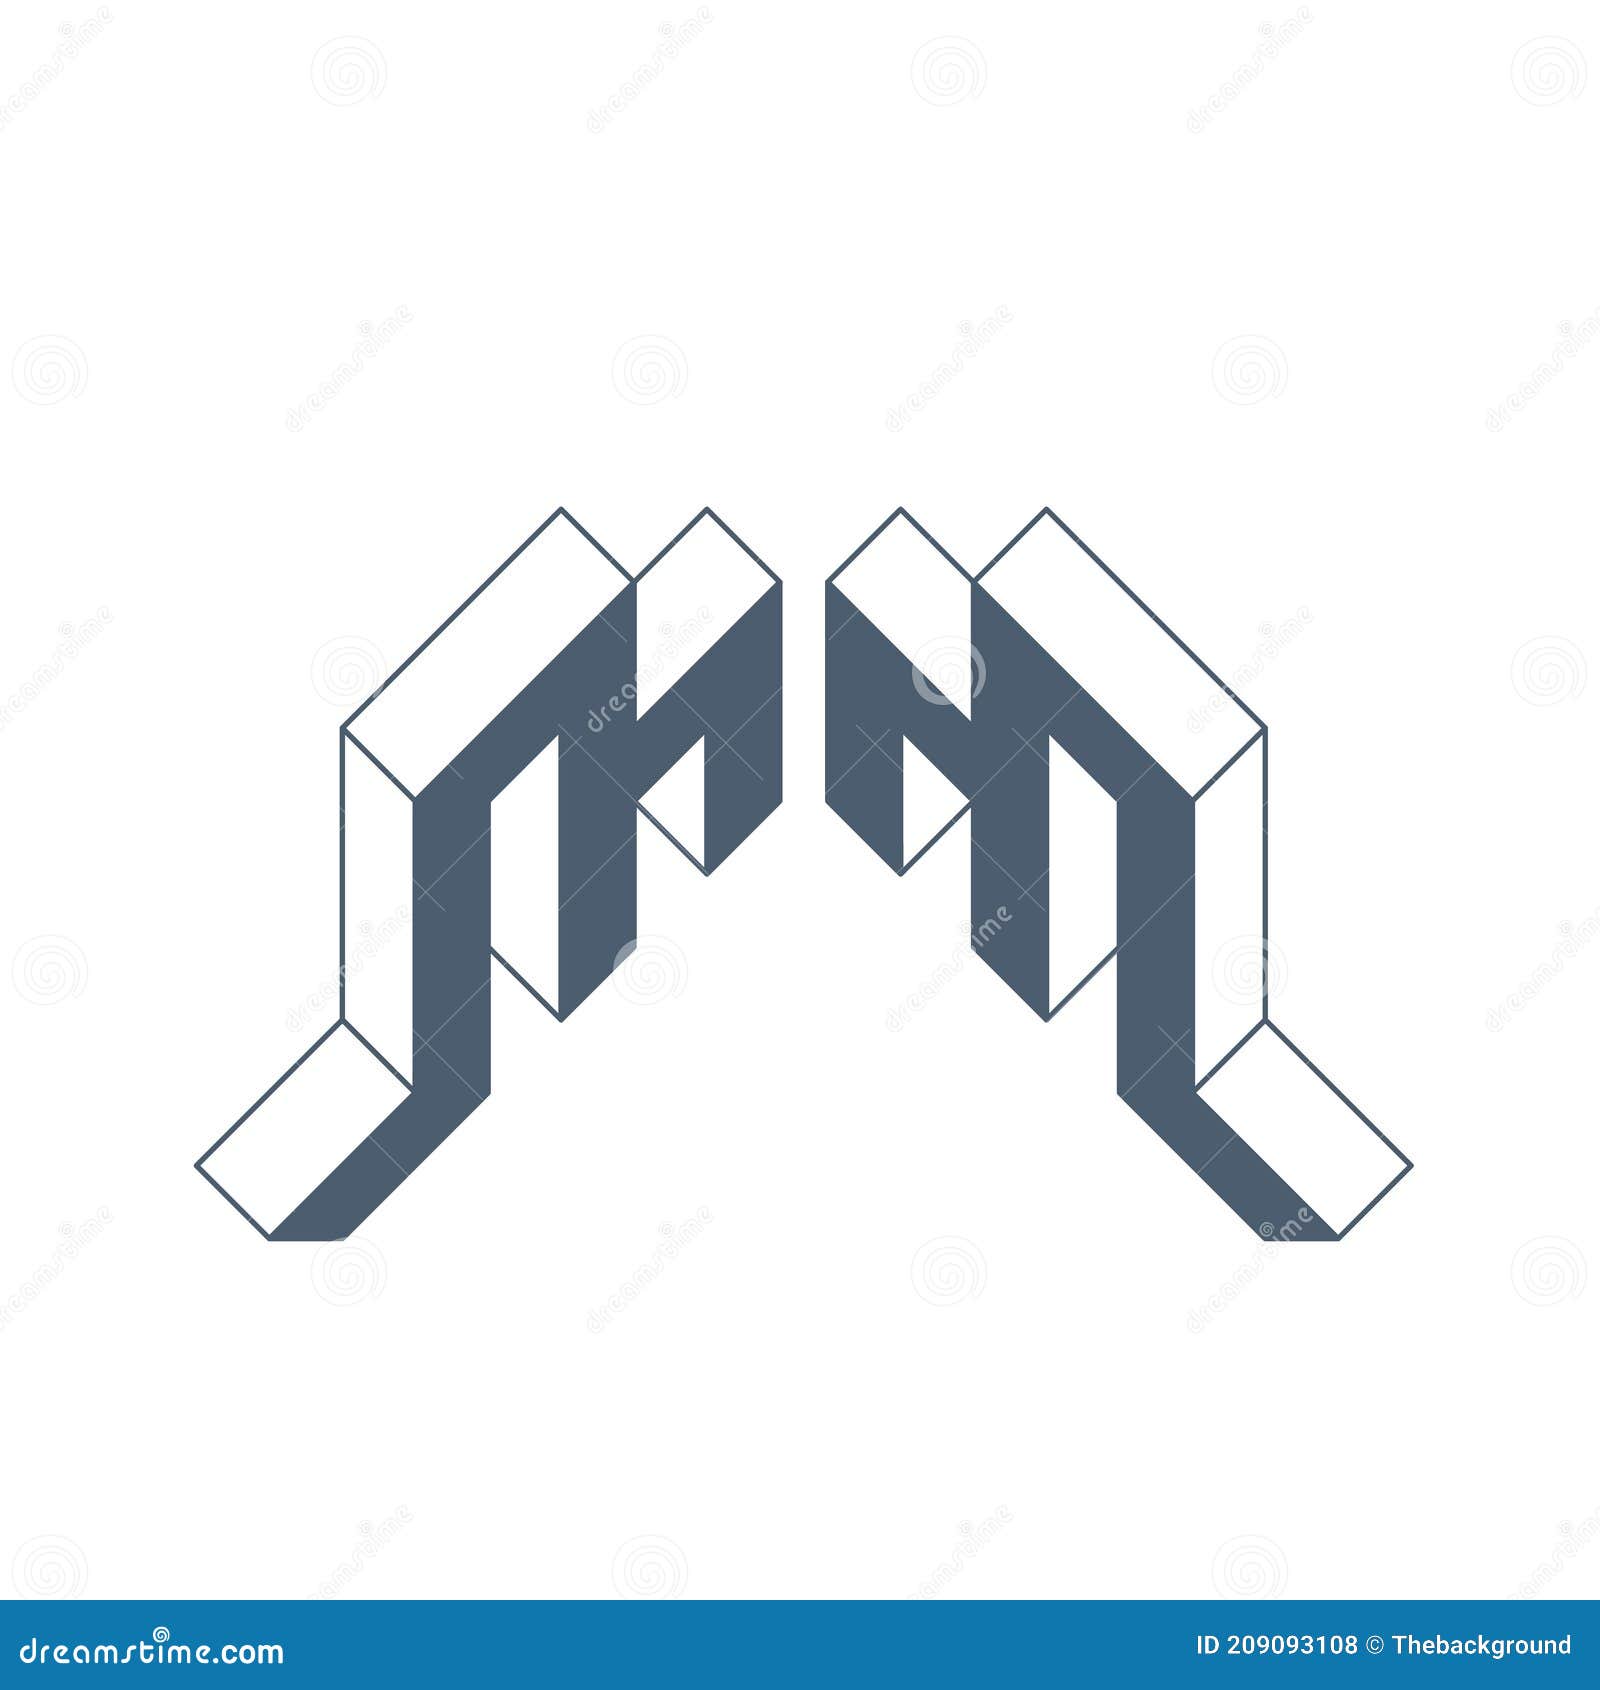 Monogram MM Letters Logo